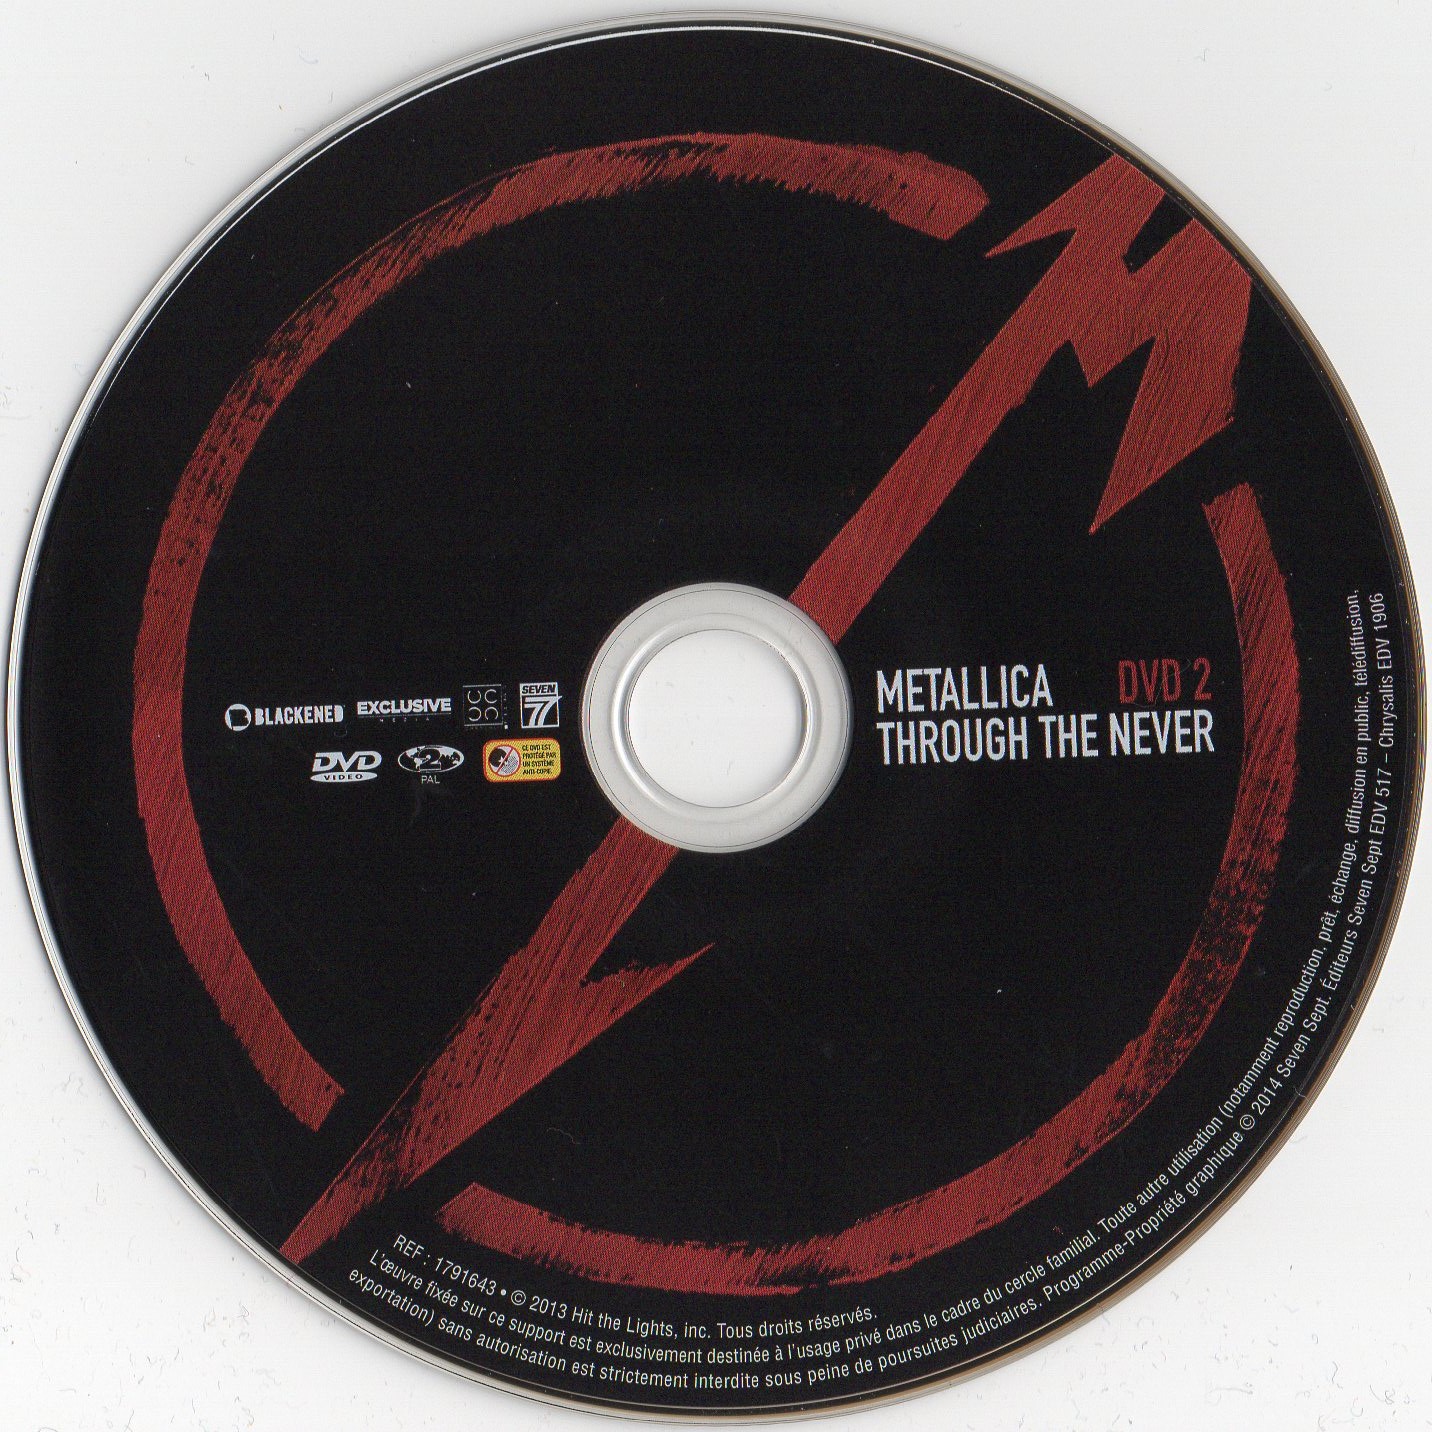 Metallica - Through the never DISC 2